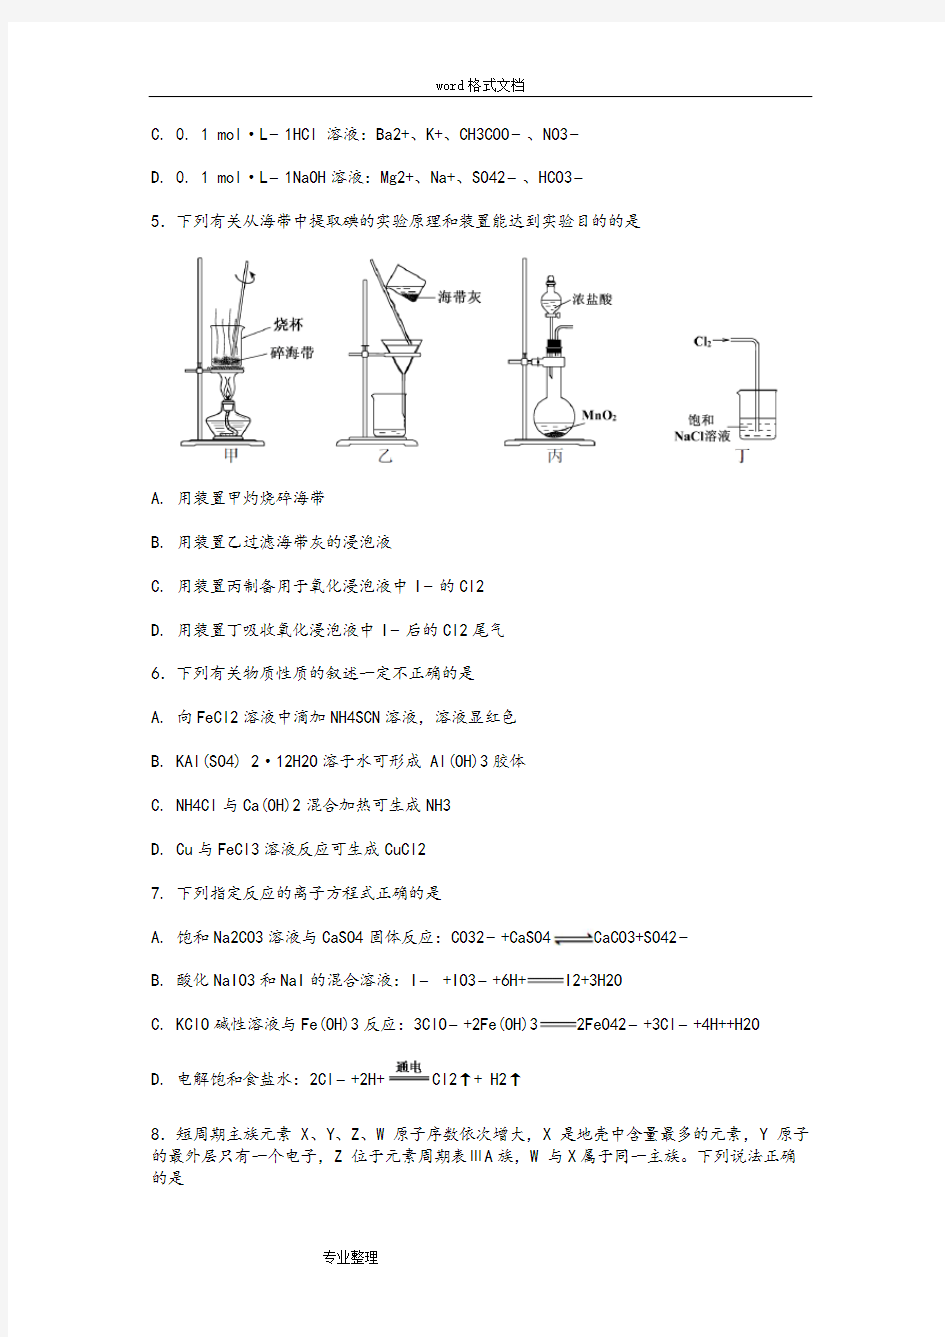 (完整版)2018江苏化学高考试题和答案解析